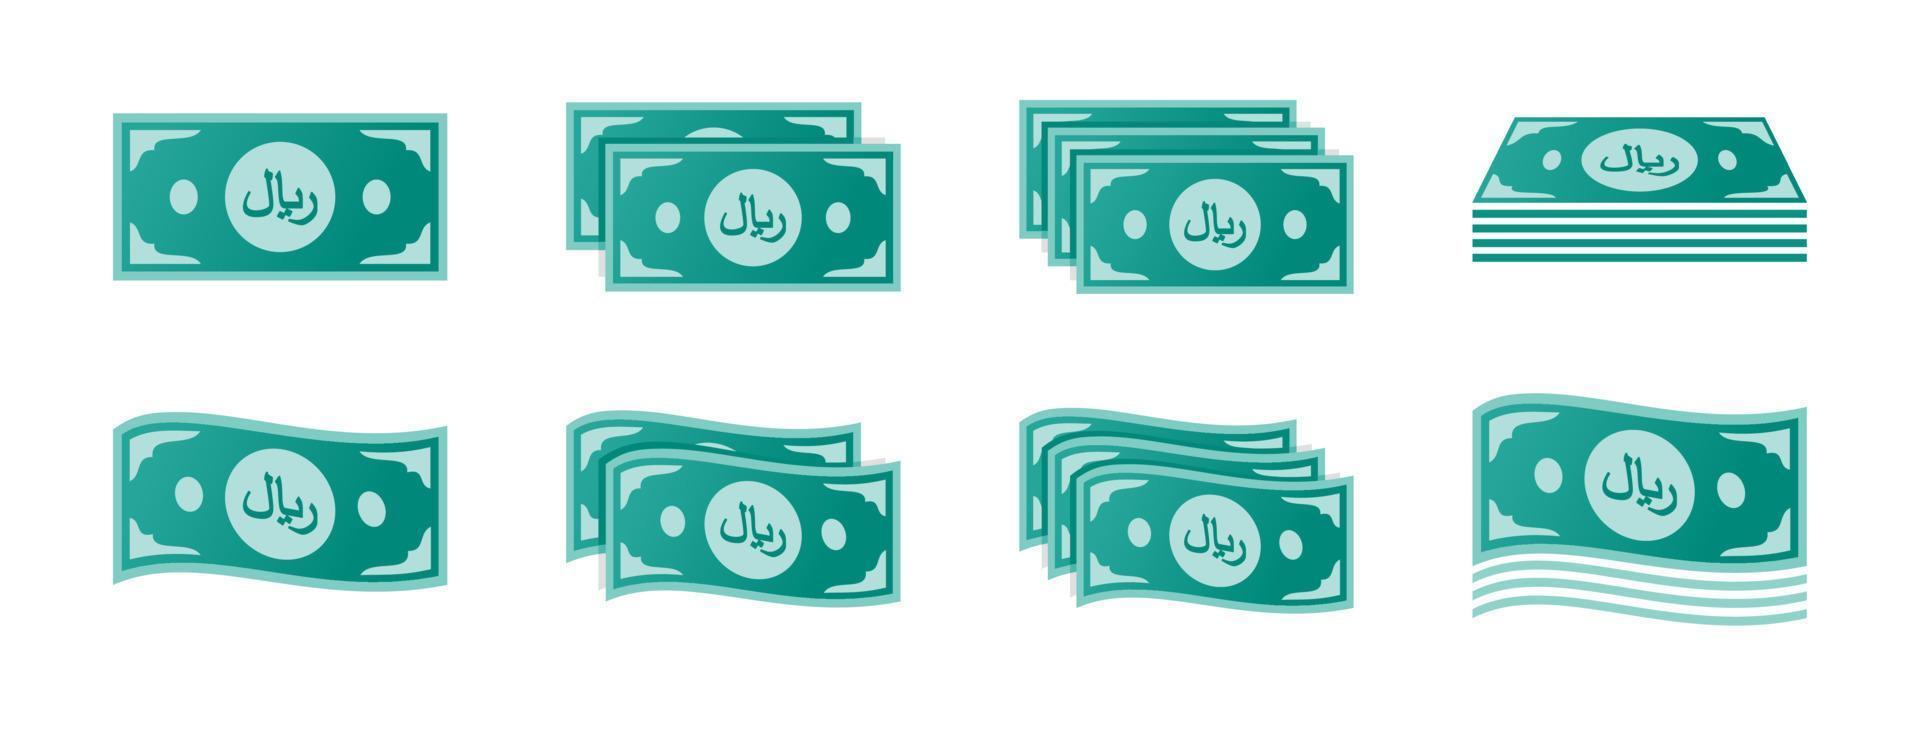 jeu d'icônes de billets de riyal saoudien vecteur